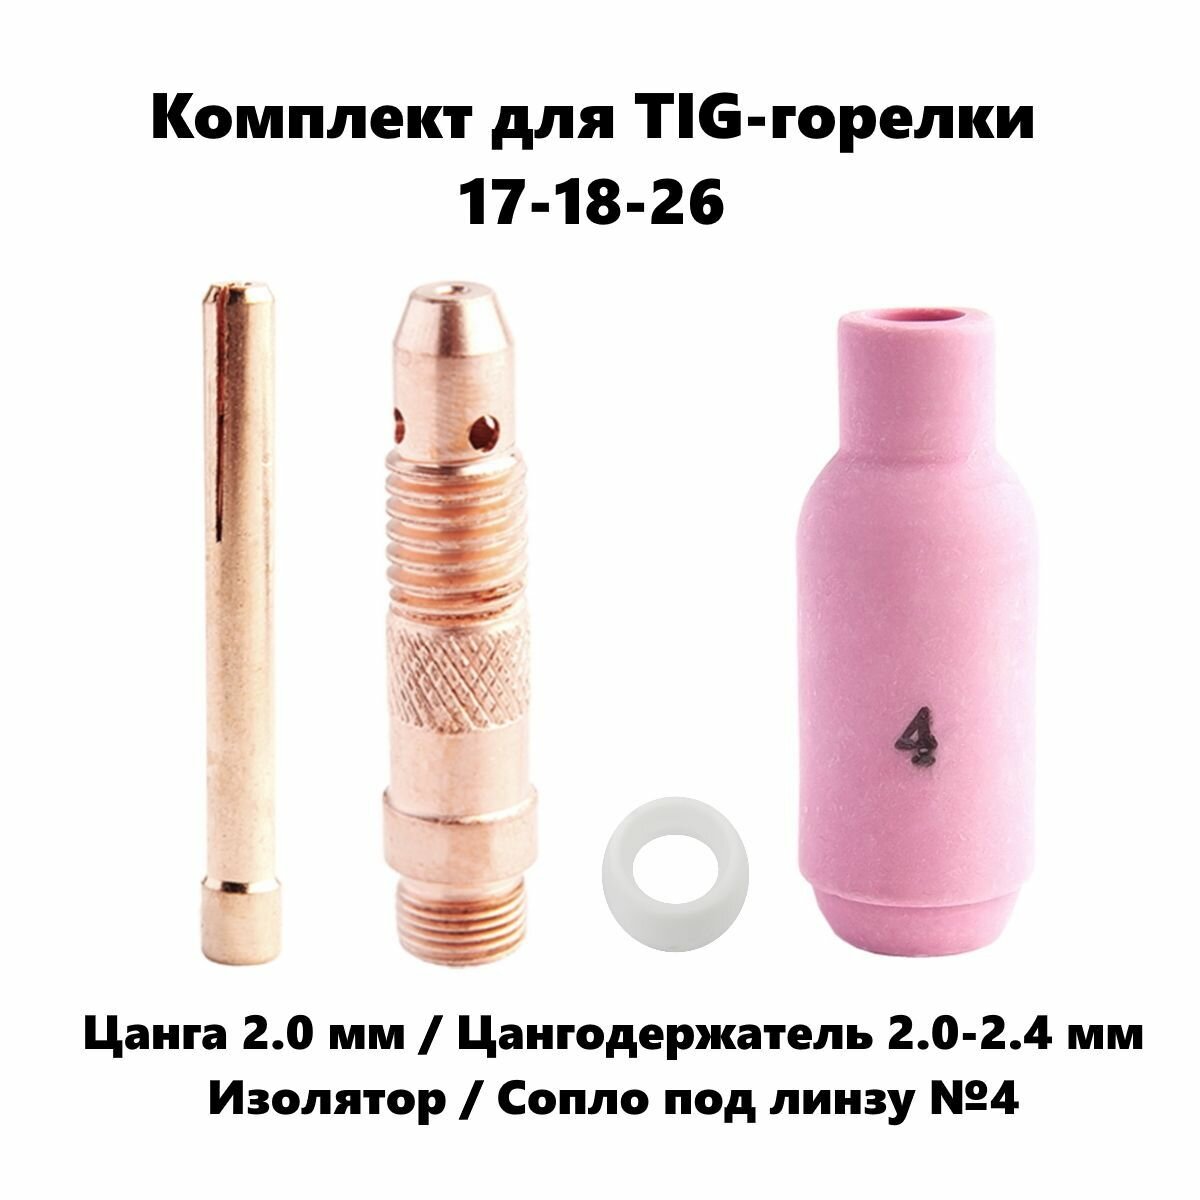 Набор 2.0 мм цанга, Сопло керамическое №4, цангодержатель, изолятор для TIG горелки (17-18-26)